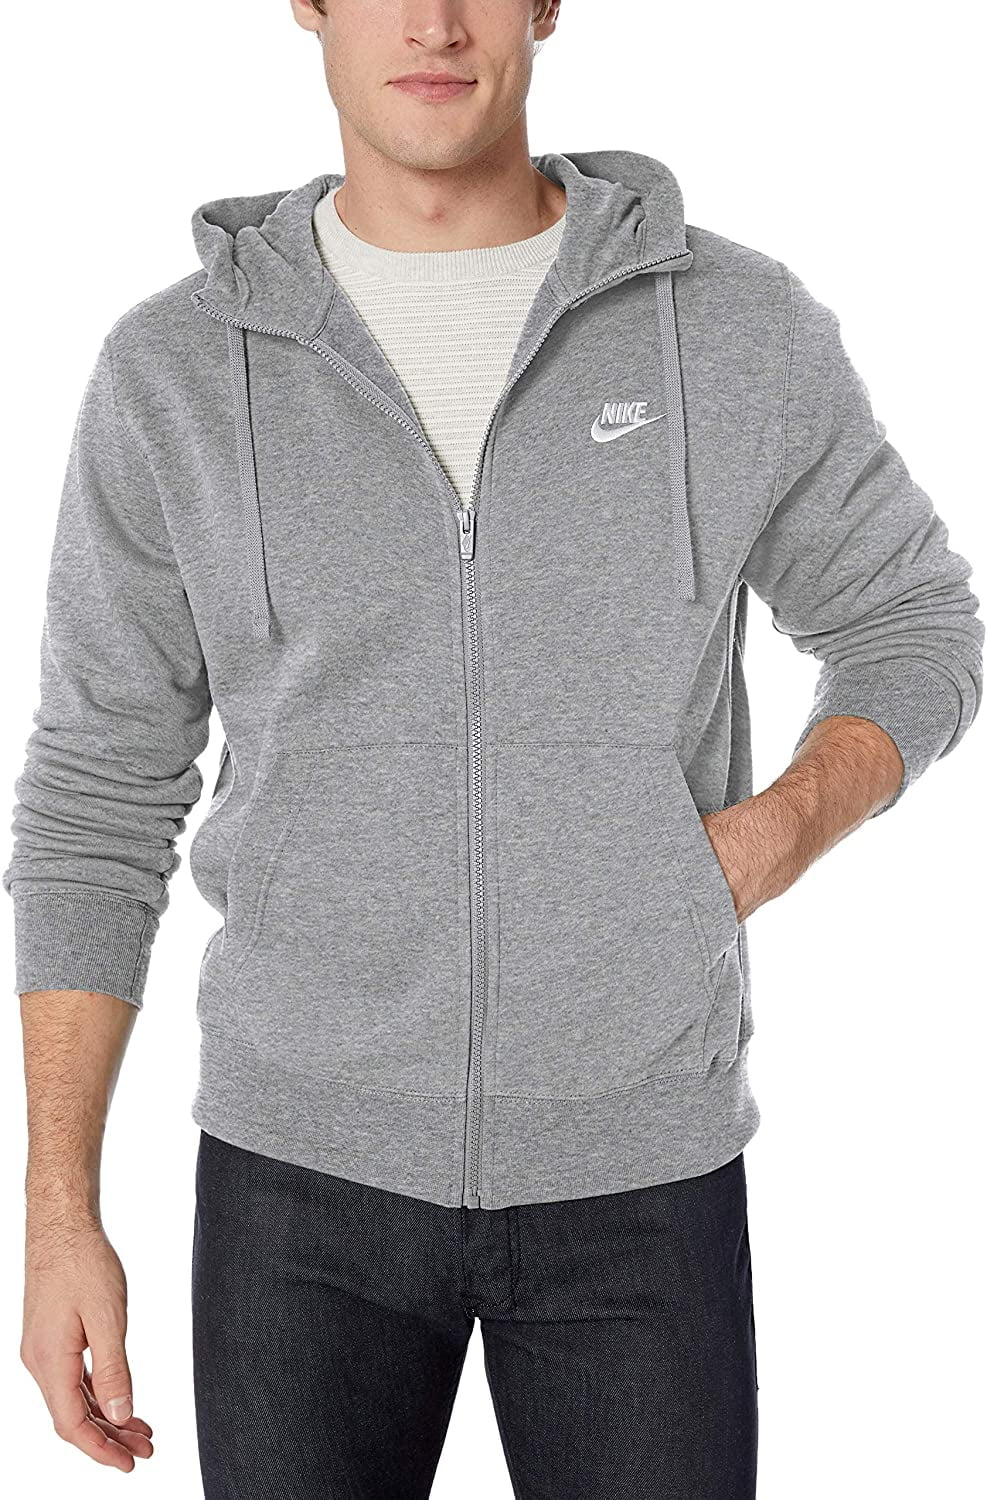 Men's Nike Sportswear Gym Red/Blk Tech Fleece Full-Zip Hoodie (CU4489 657)  - 4XL